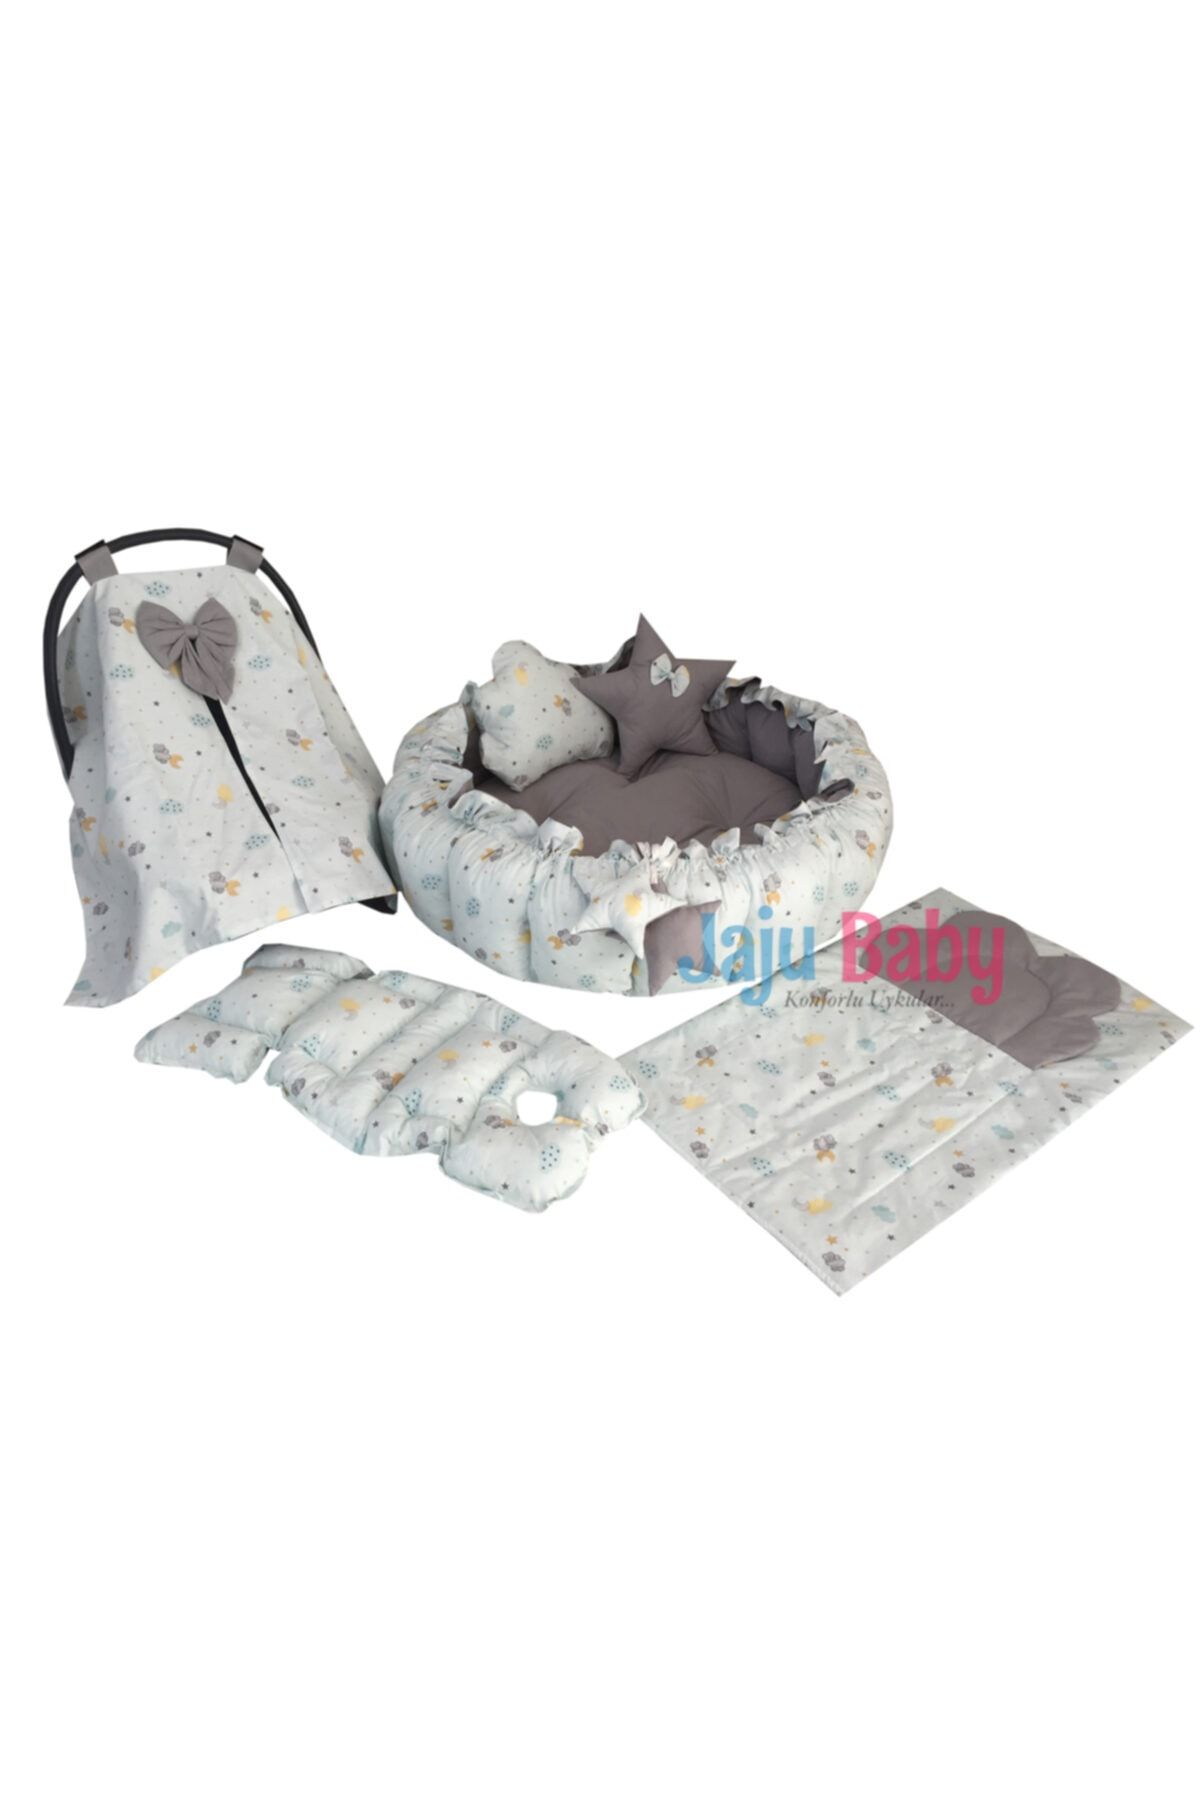 Jaju Baby Nest Mint Ay Ve Bulut Desenli Set Tasarım Lüx Oyun Minderi Jaju-babynest Anne Yanı